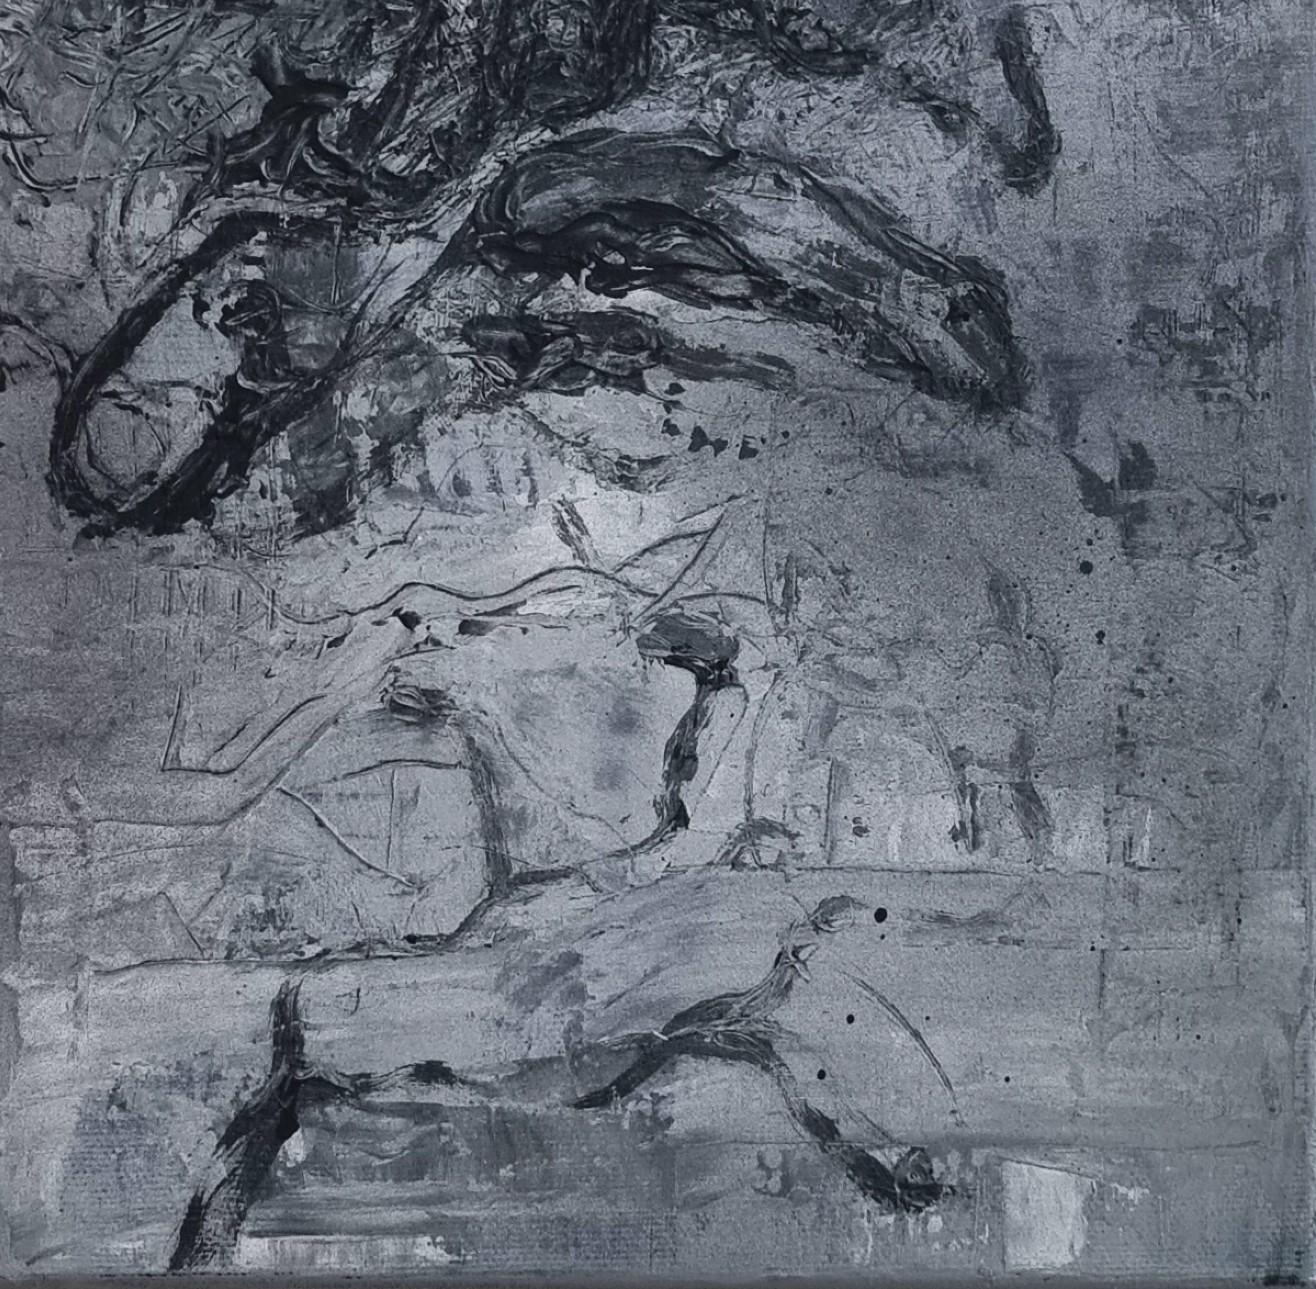 Sans titre 03 [Remains of the Remains 03] - Art contemporain, abstrait, noir - Noir Abstract Painting par Zsolt Berszán